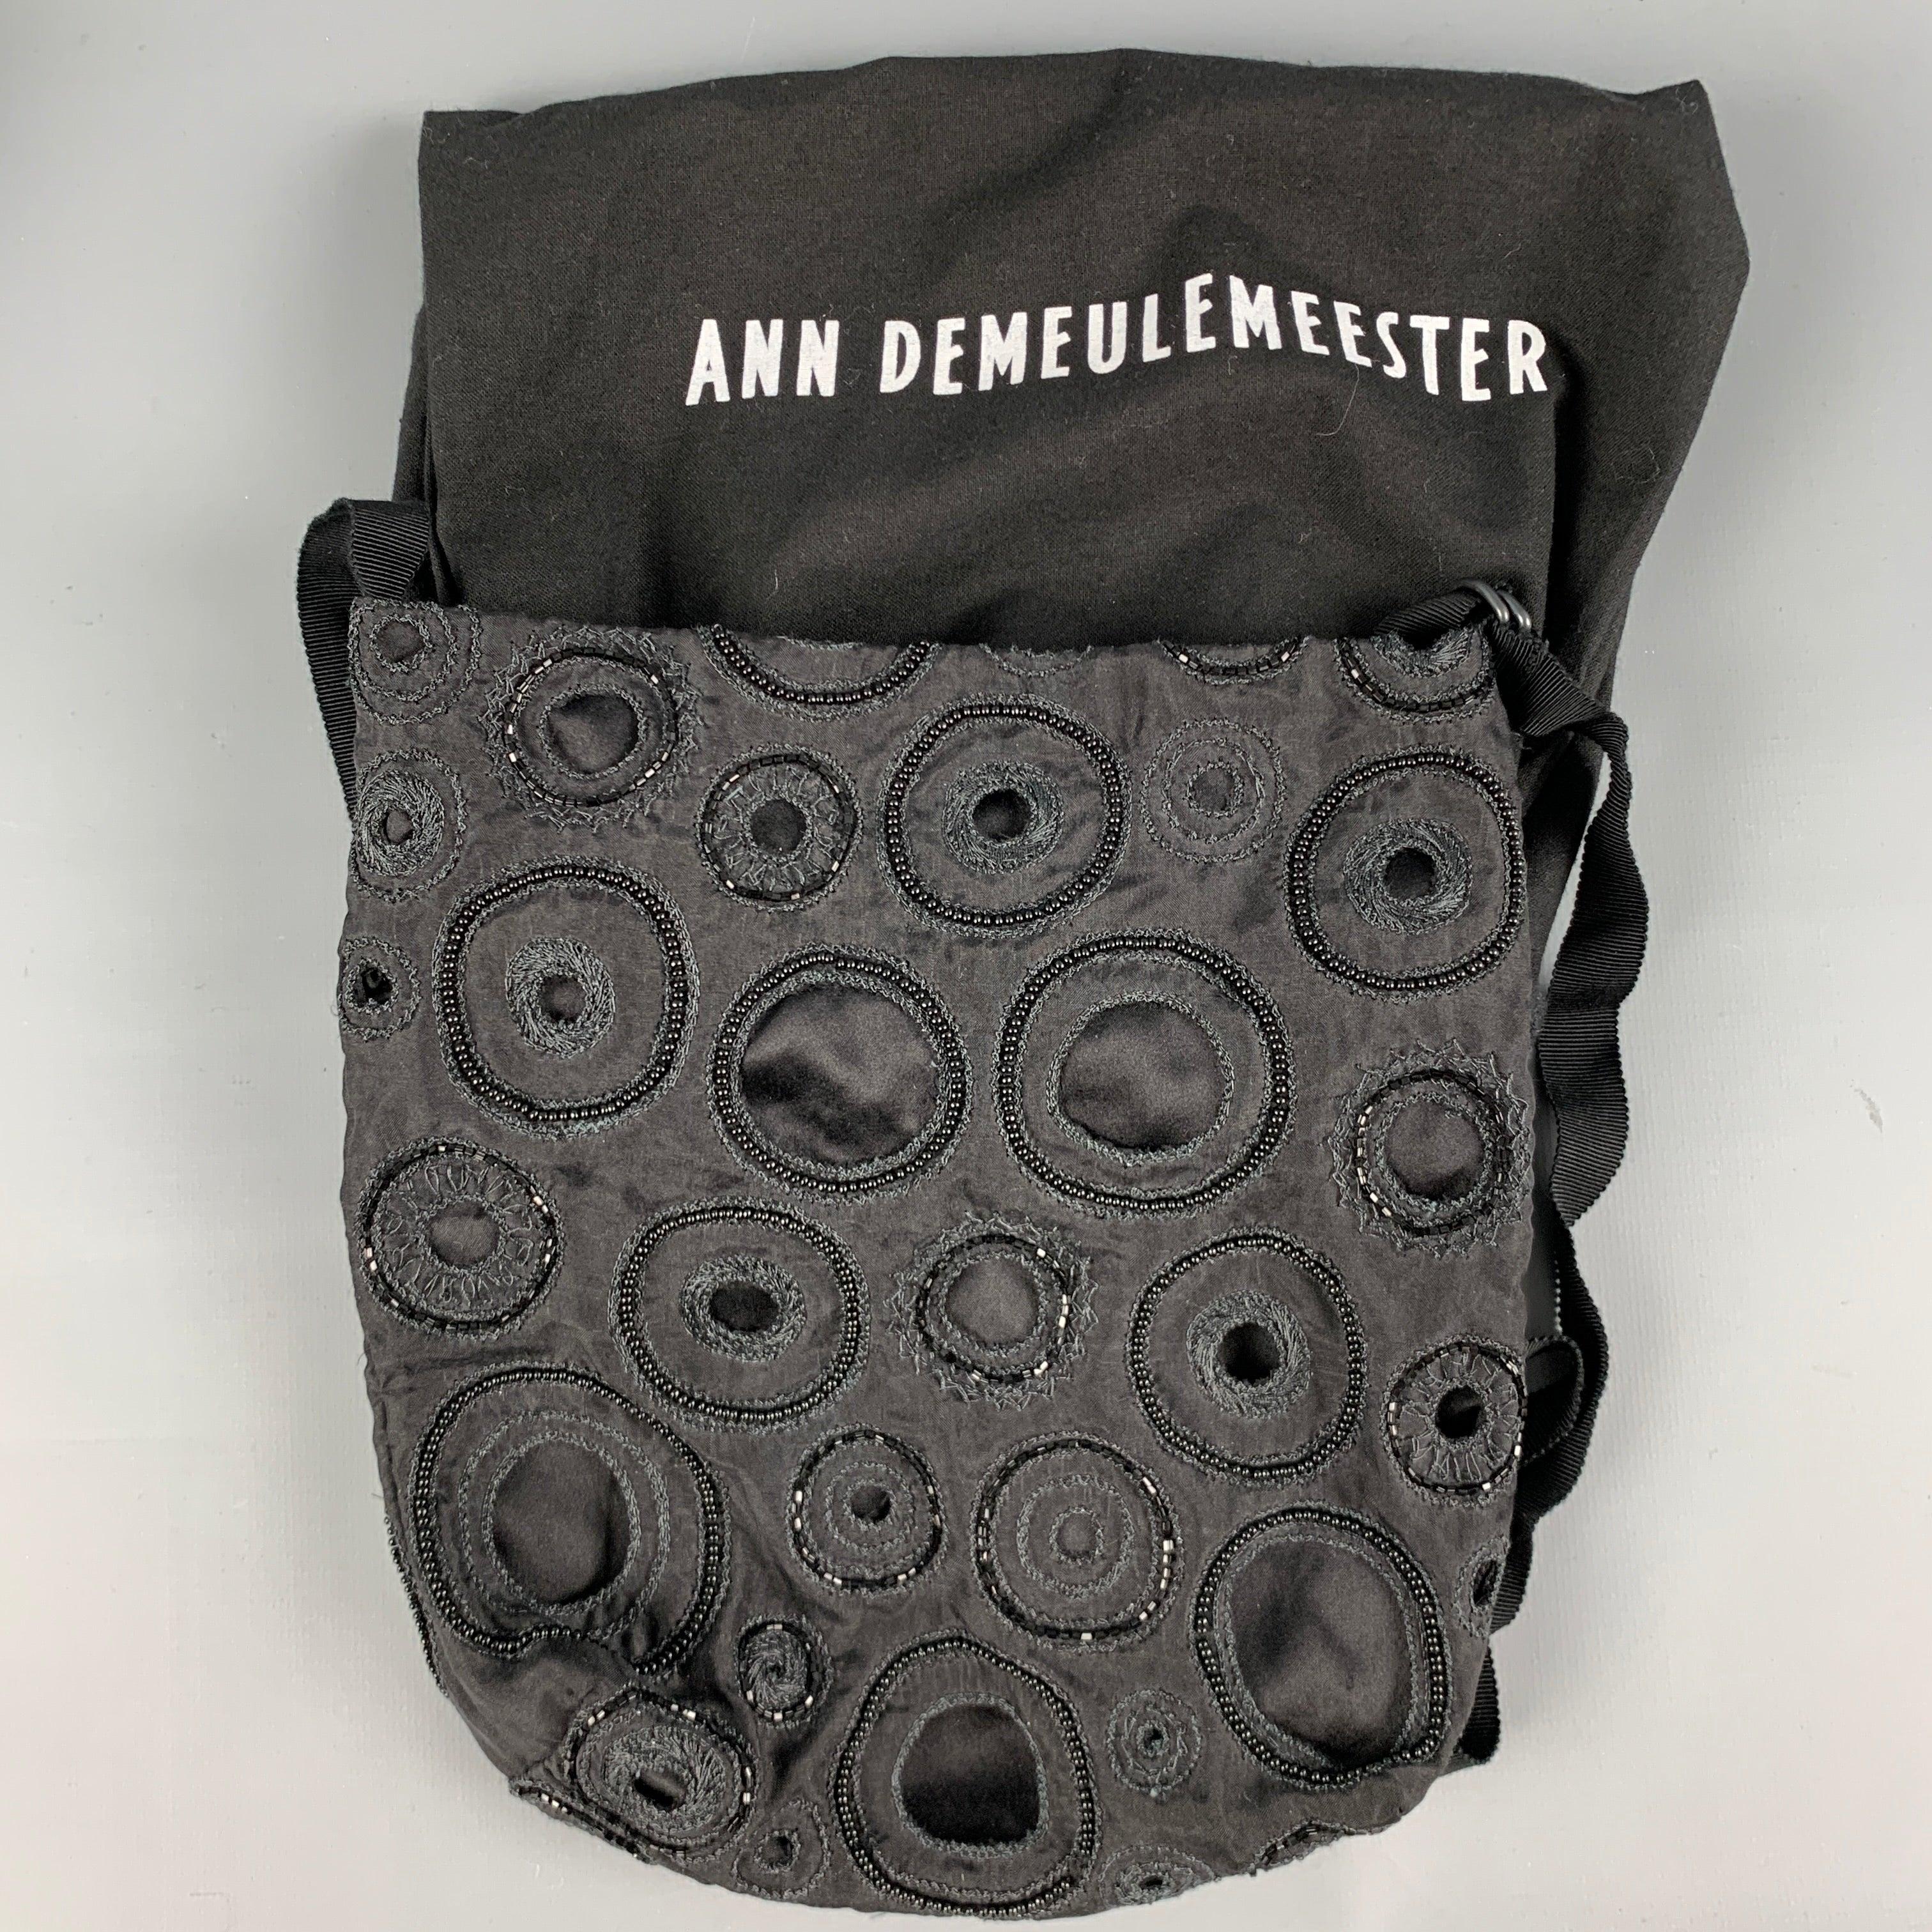 ANN DEMEULEMEESTER Black Embroidered Beaded Cross Body Handbag For Sale 6